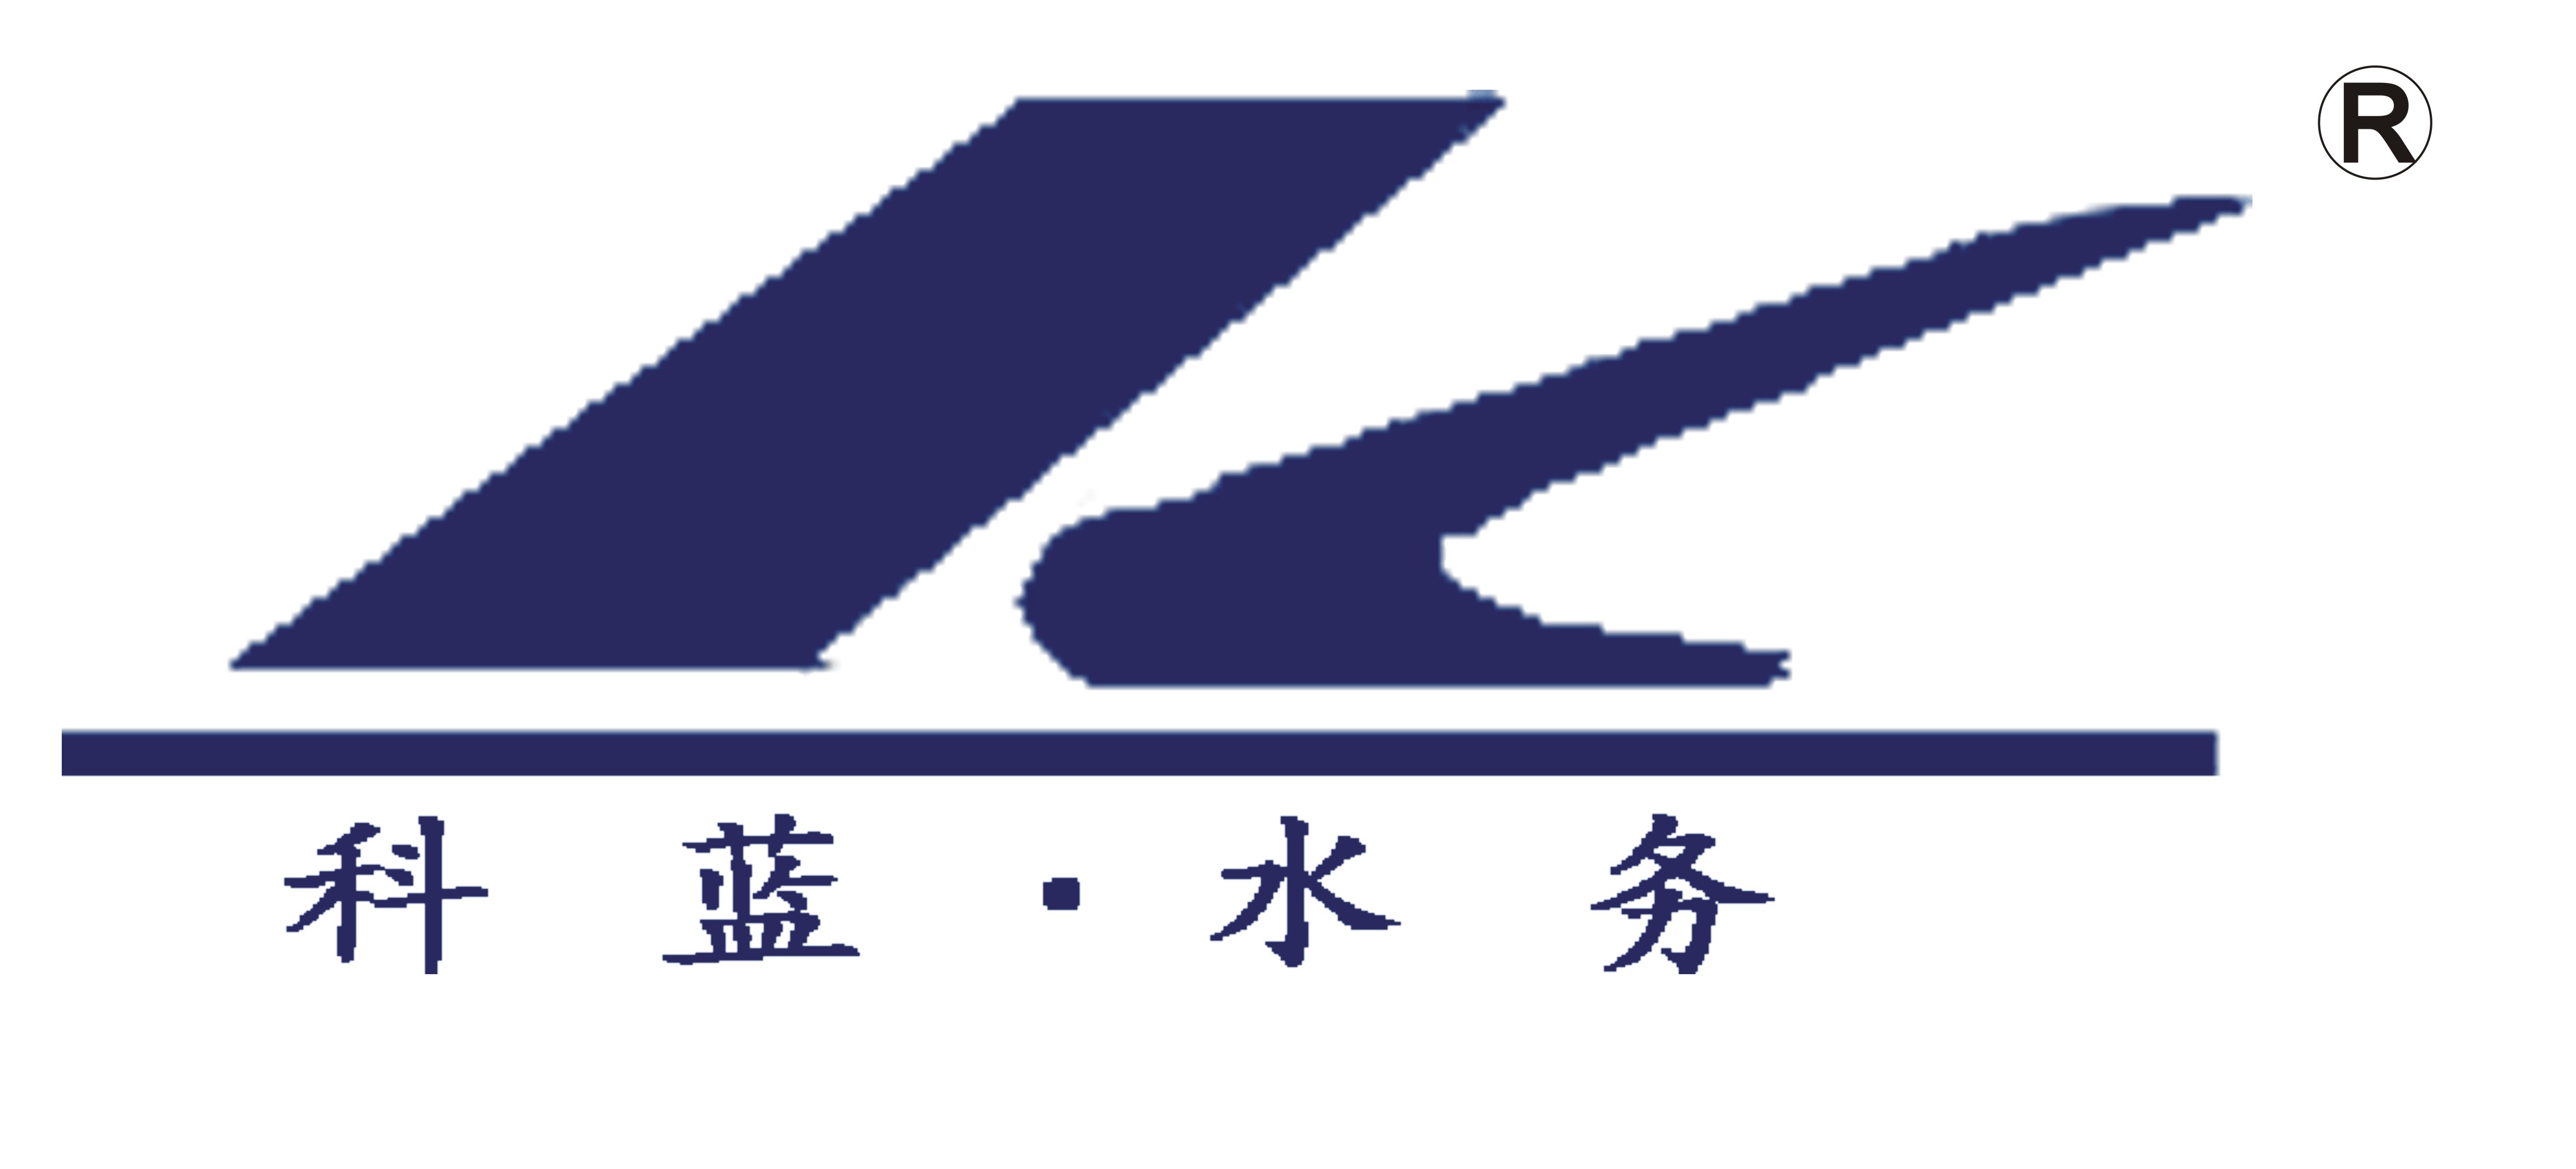 南京科蓝水务工程设备有限公司